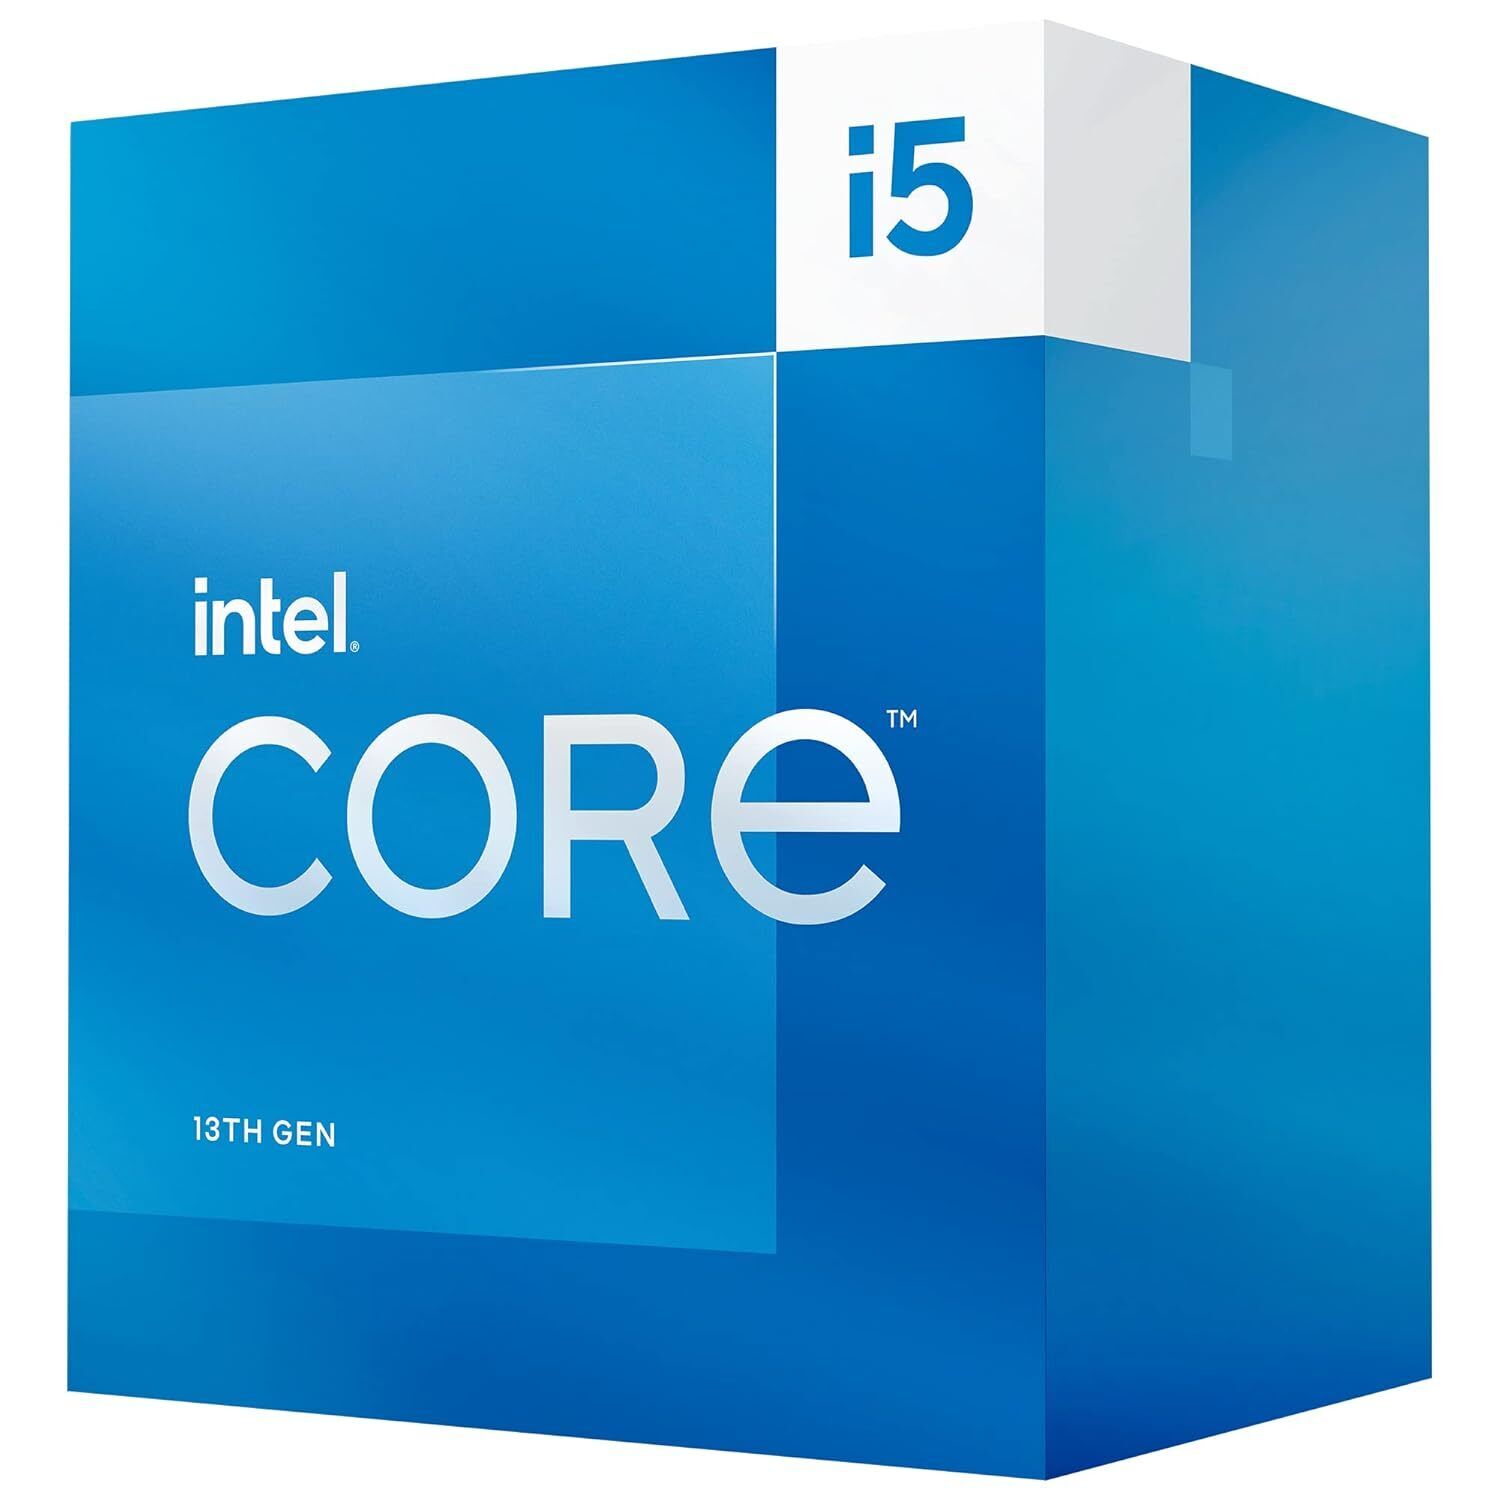 Intel Core i5-13500 Desktop Processor 14 cores (6 P-cores + 8 E-cores) 24MB Ca